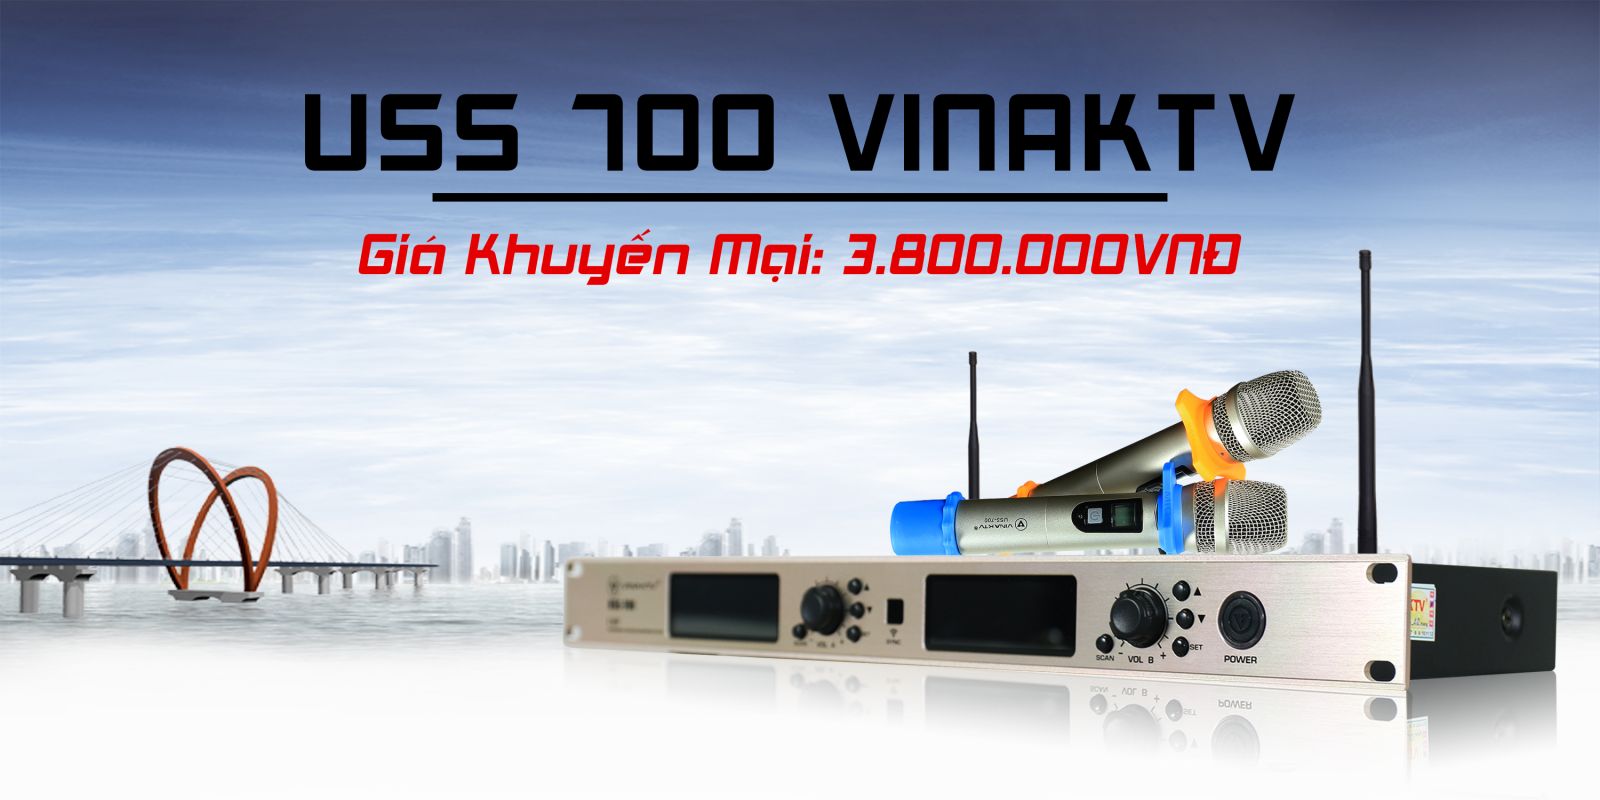 Micro USS 700 VinaKTV